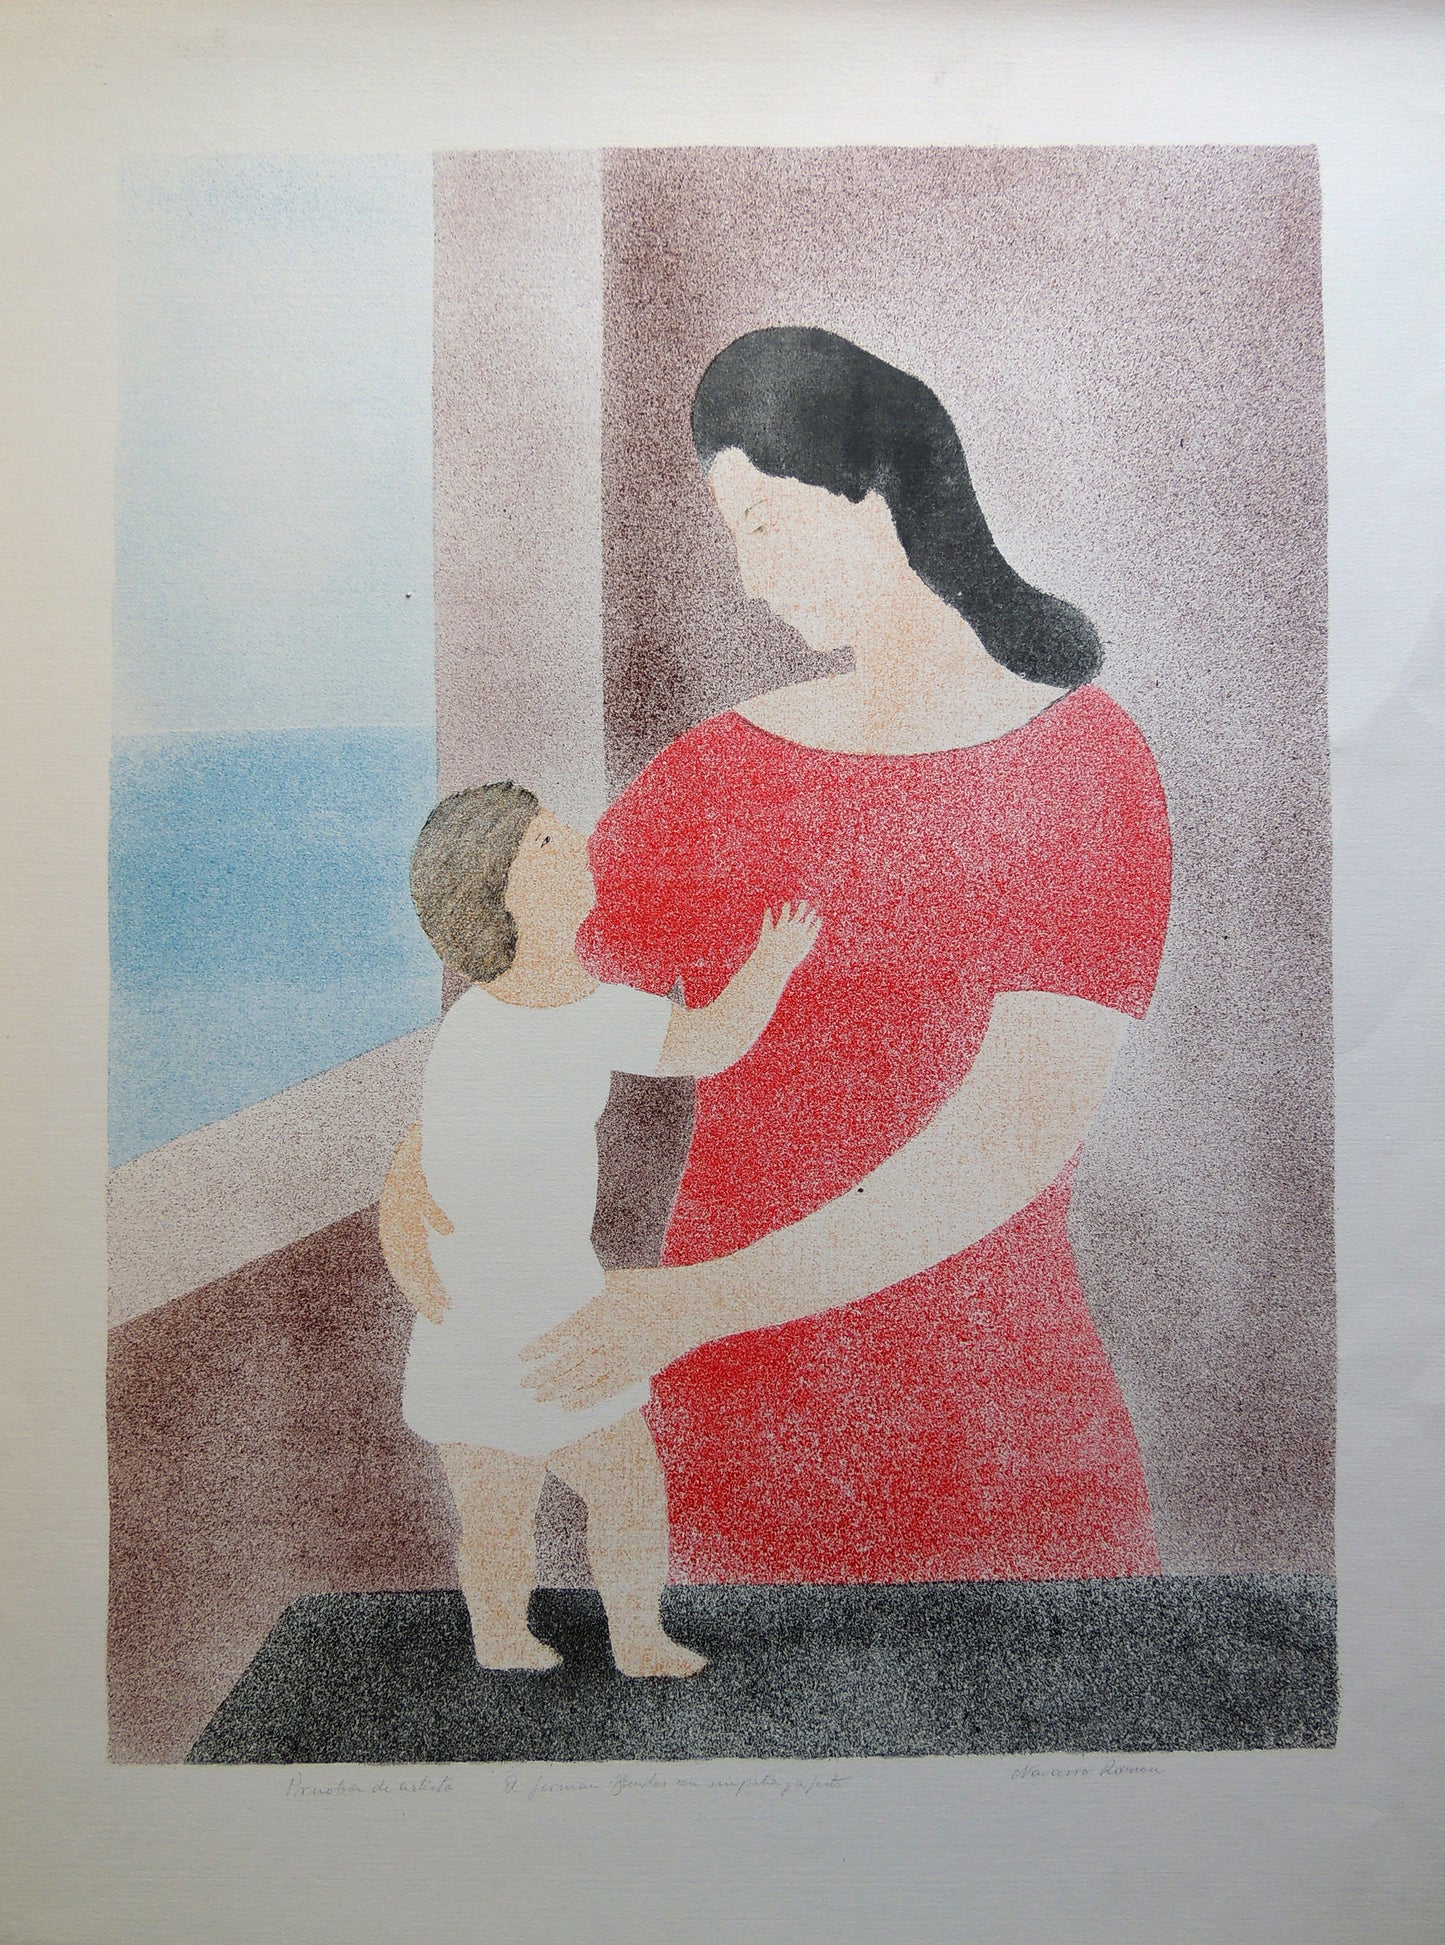 Lote de dos obras: Juan Navarro Ramón - Maternidad y La espera